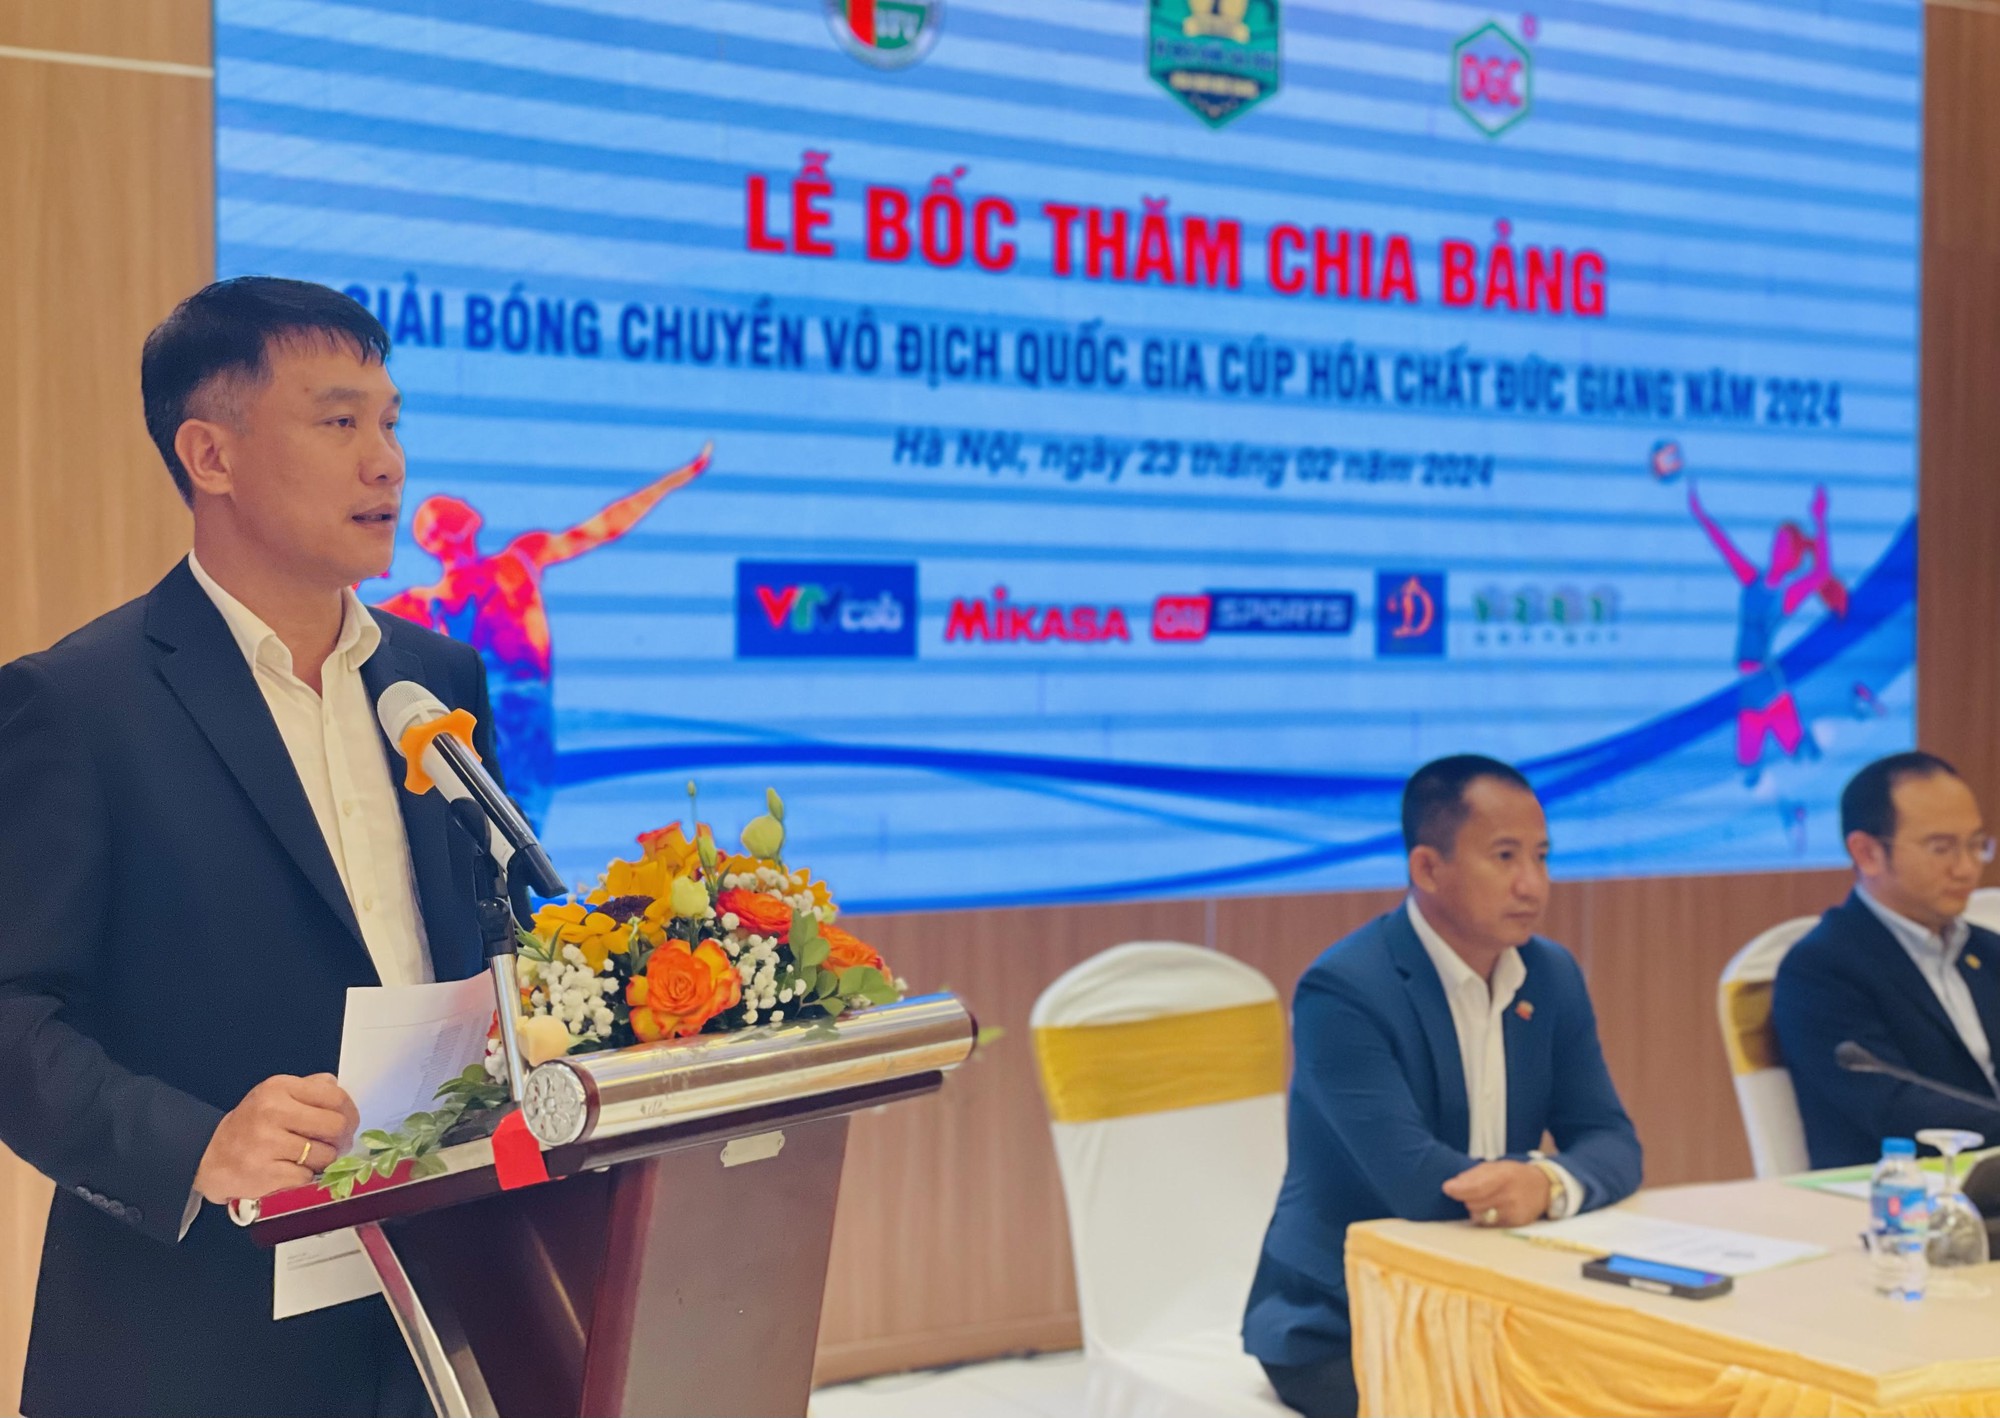 Ngoại binh Trung Quốc, Thái Lan, VAR xuất hiện tại Giải bóng chuyền VĐQG 2024- Ảnh 3.